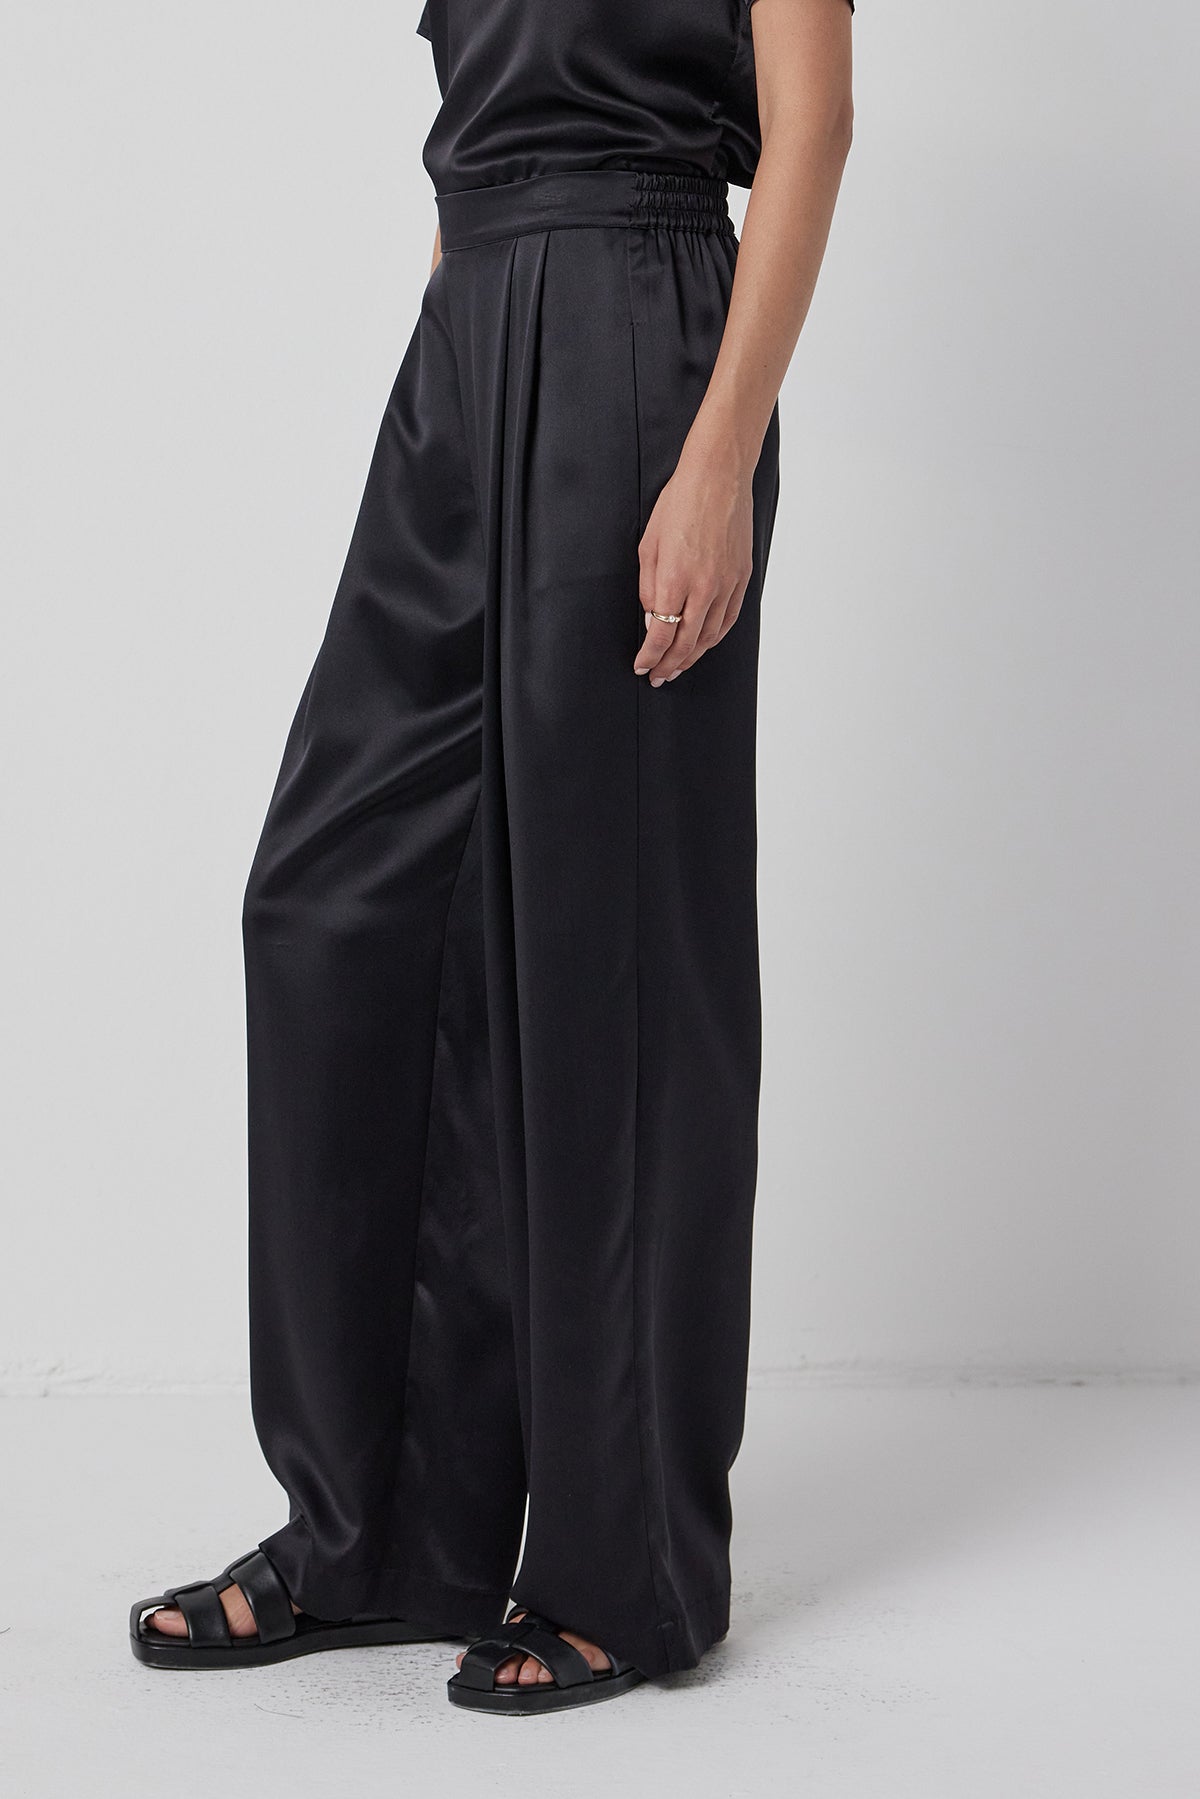 The model is wearing Velvet by Jenny Graham's MANHATTAN PANT.-35547440971969